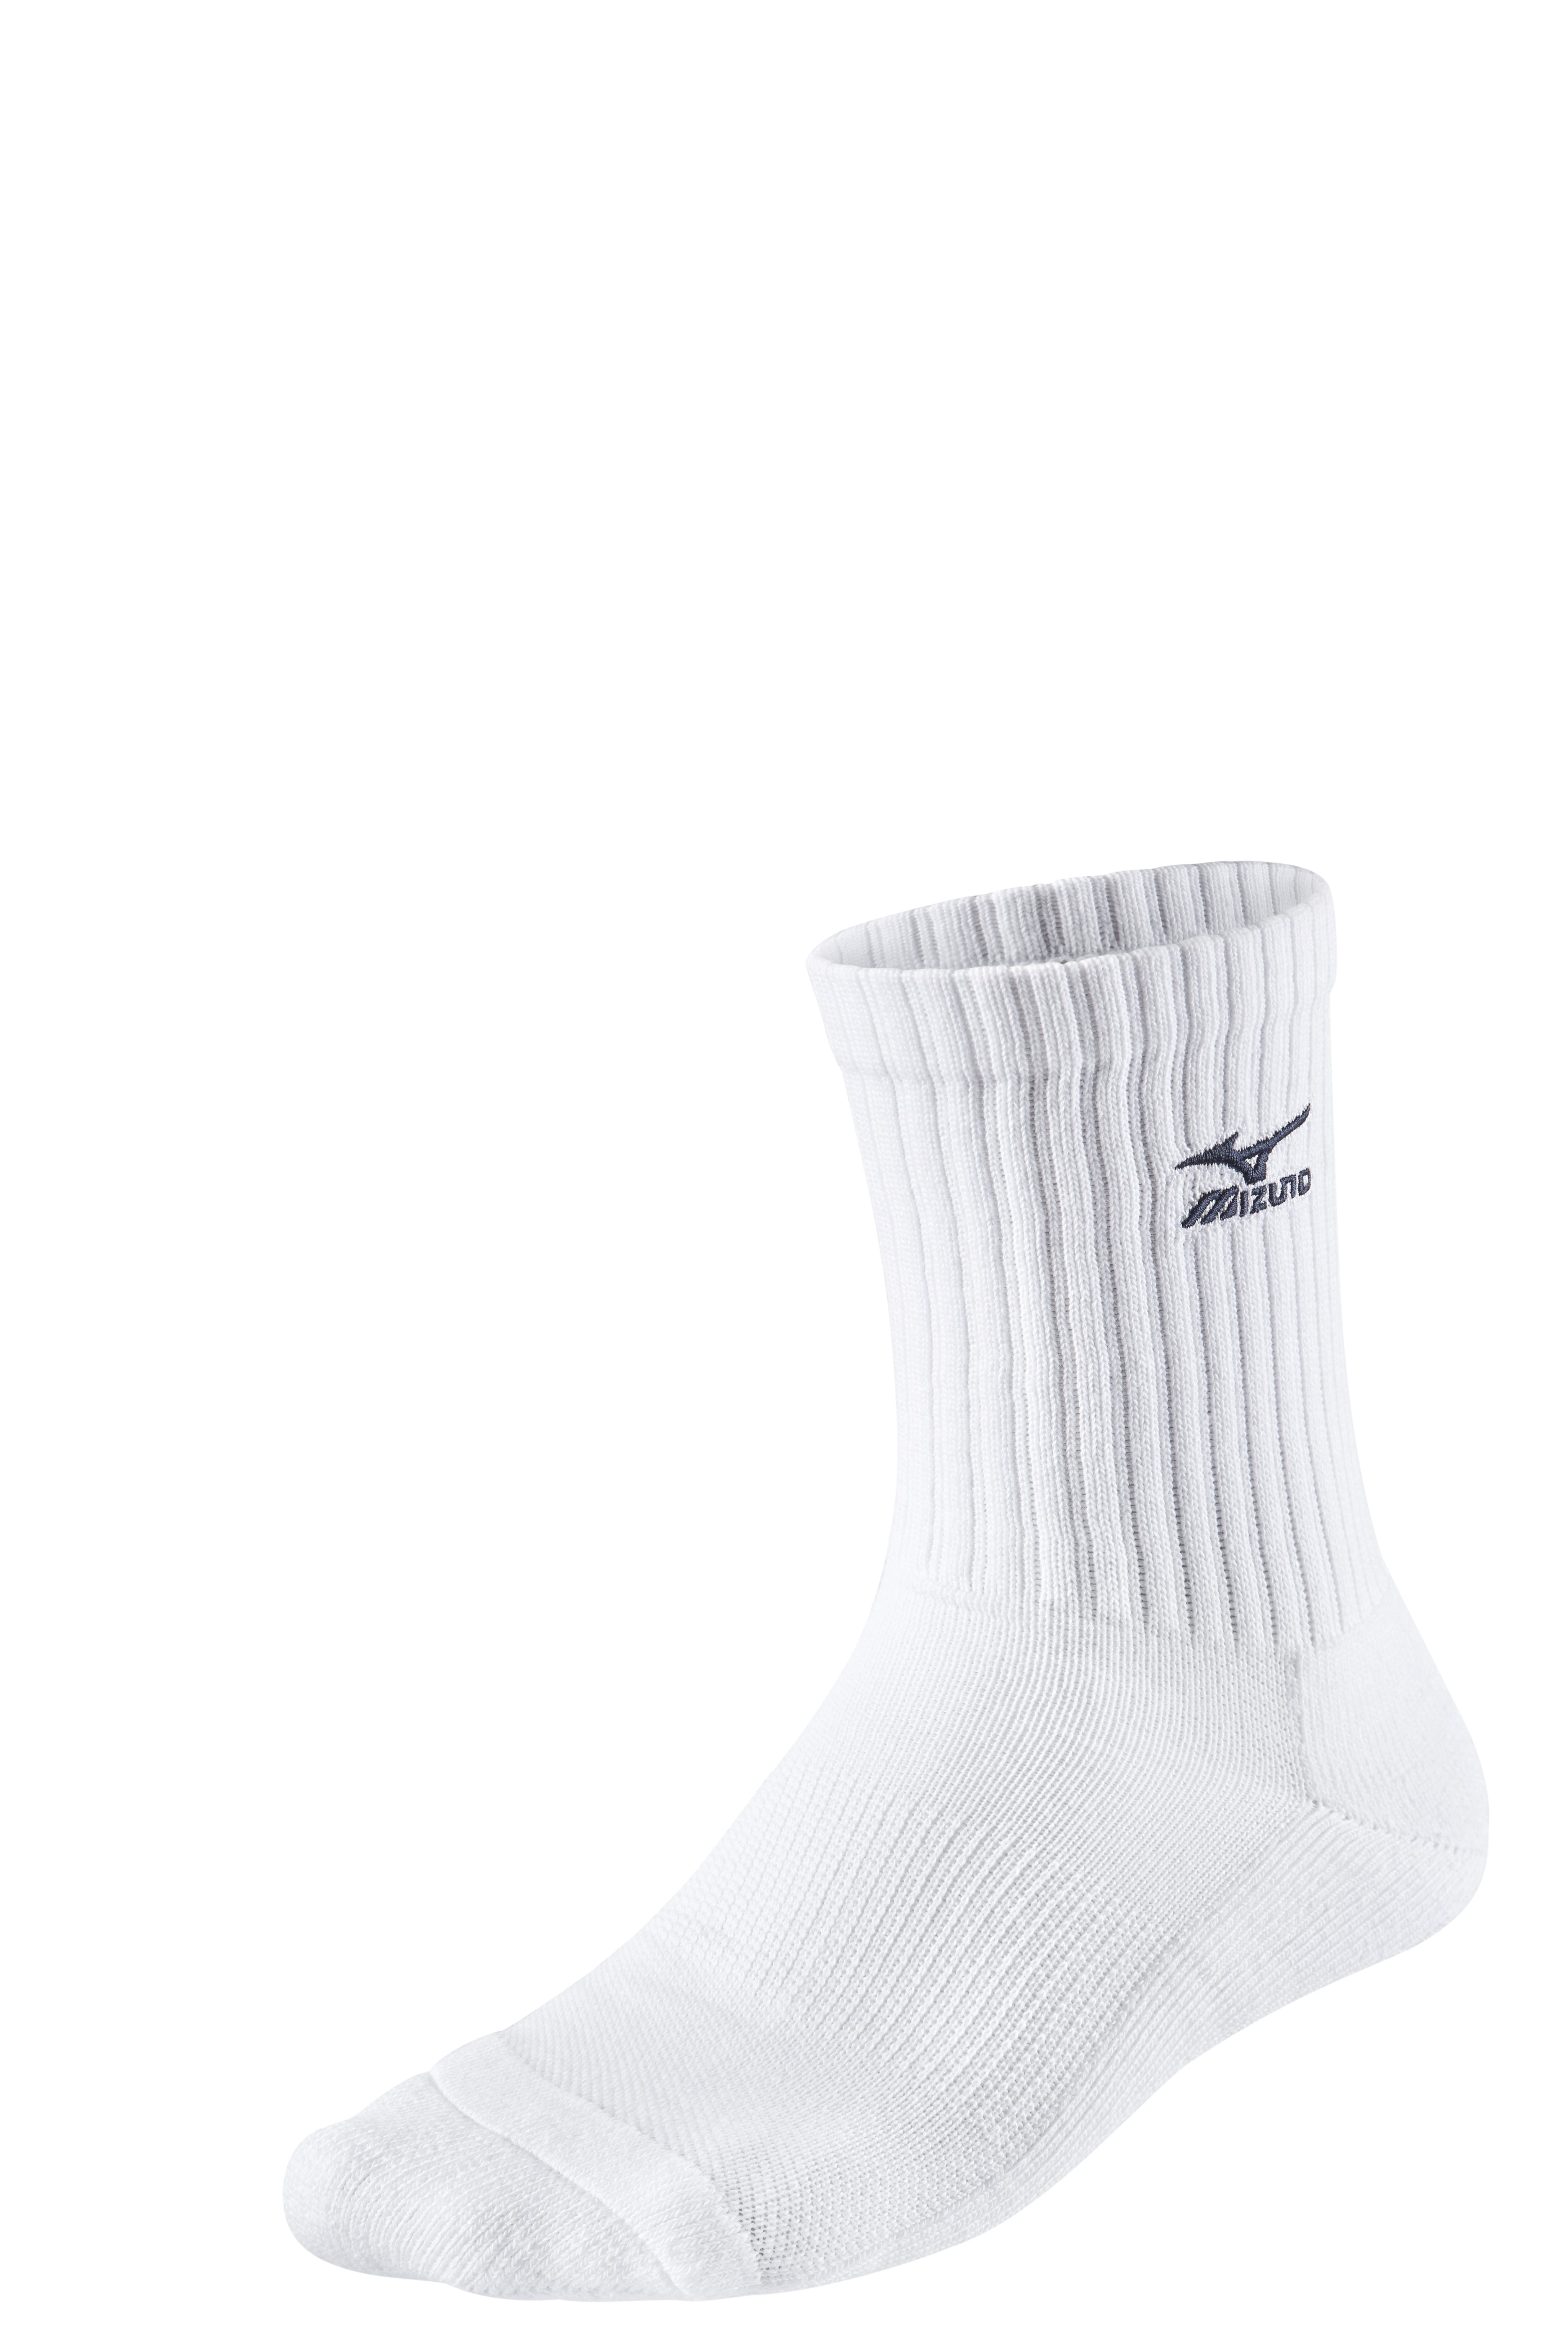 Mizuno Volley Socks Medium 67UU71571 XXL